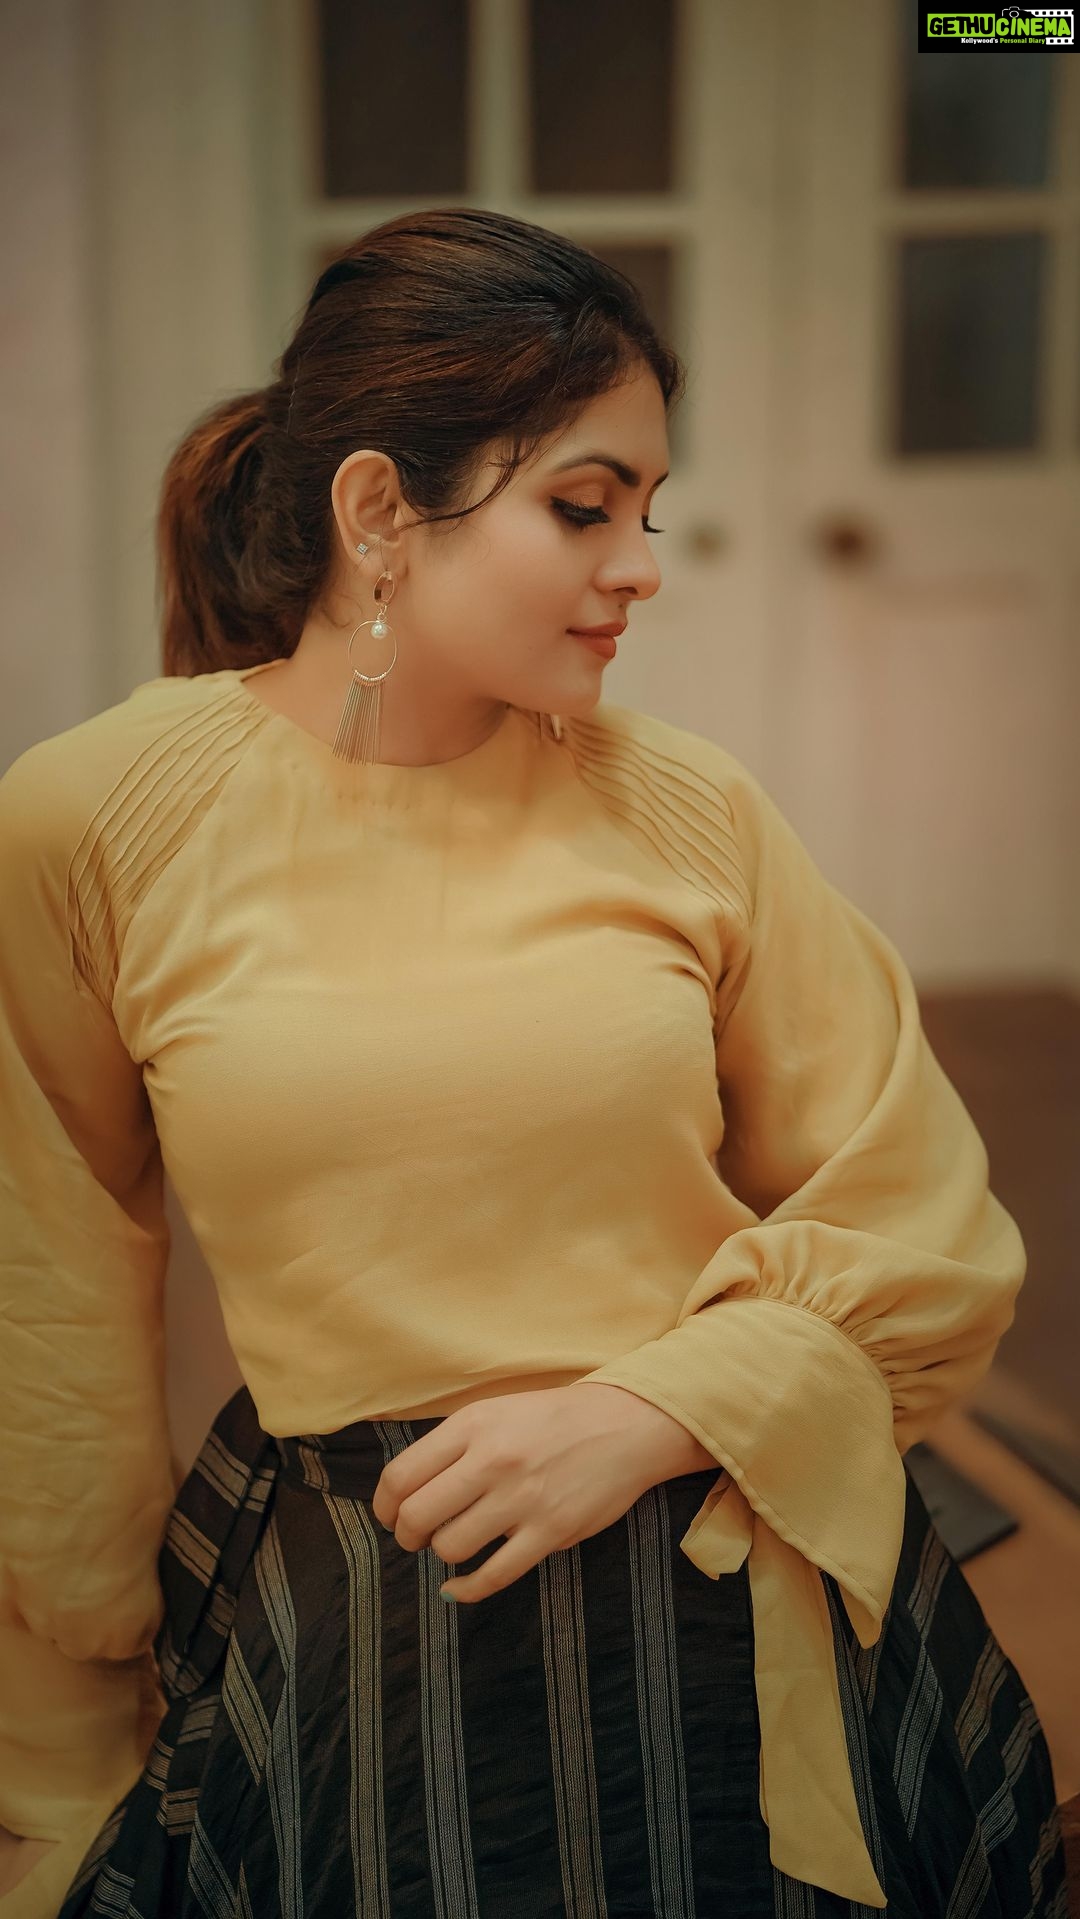 1080px x 1919px - Actress Gayathri Arun Top 100 Instagram Photos and Posts - Gethu Cinema